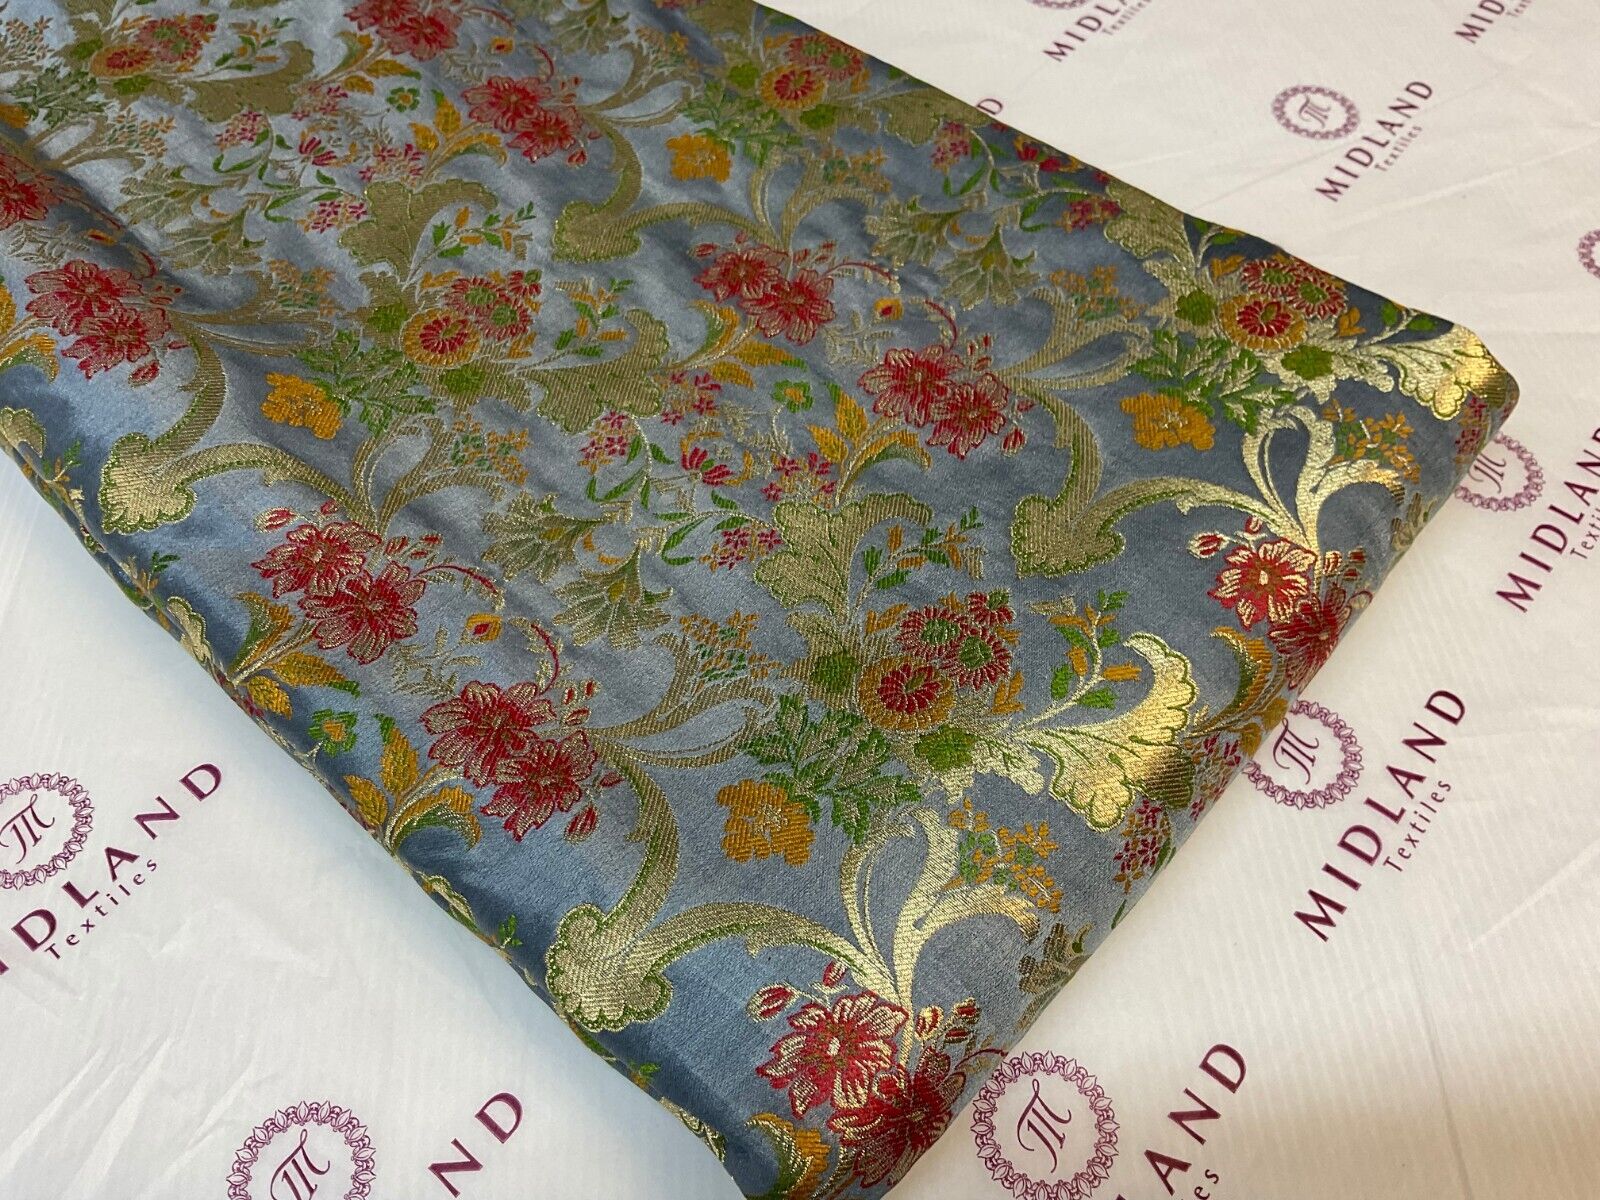 Ornamental Floral Silk Kingkhab wedding Brocade Fabric 114cm wide M1770